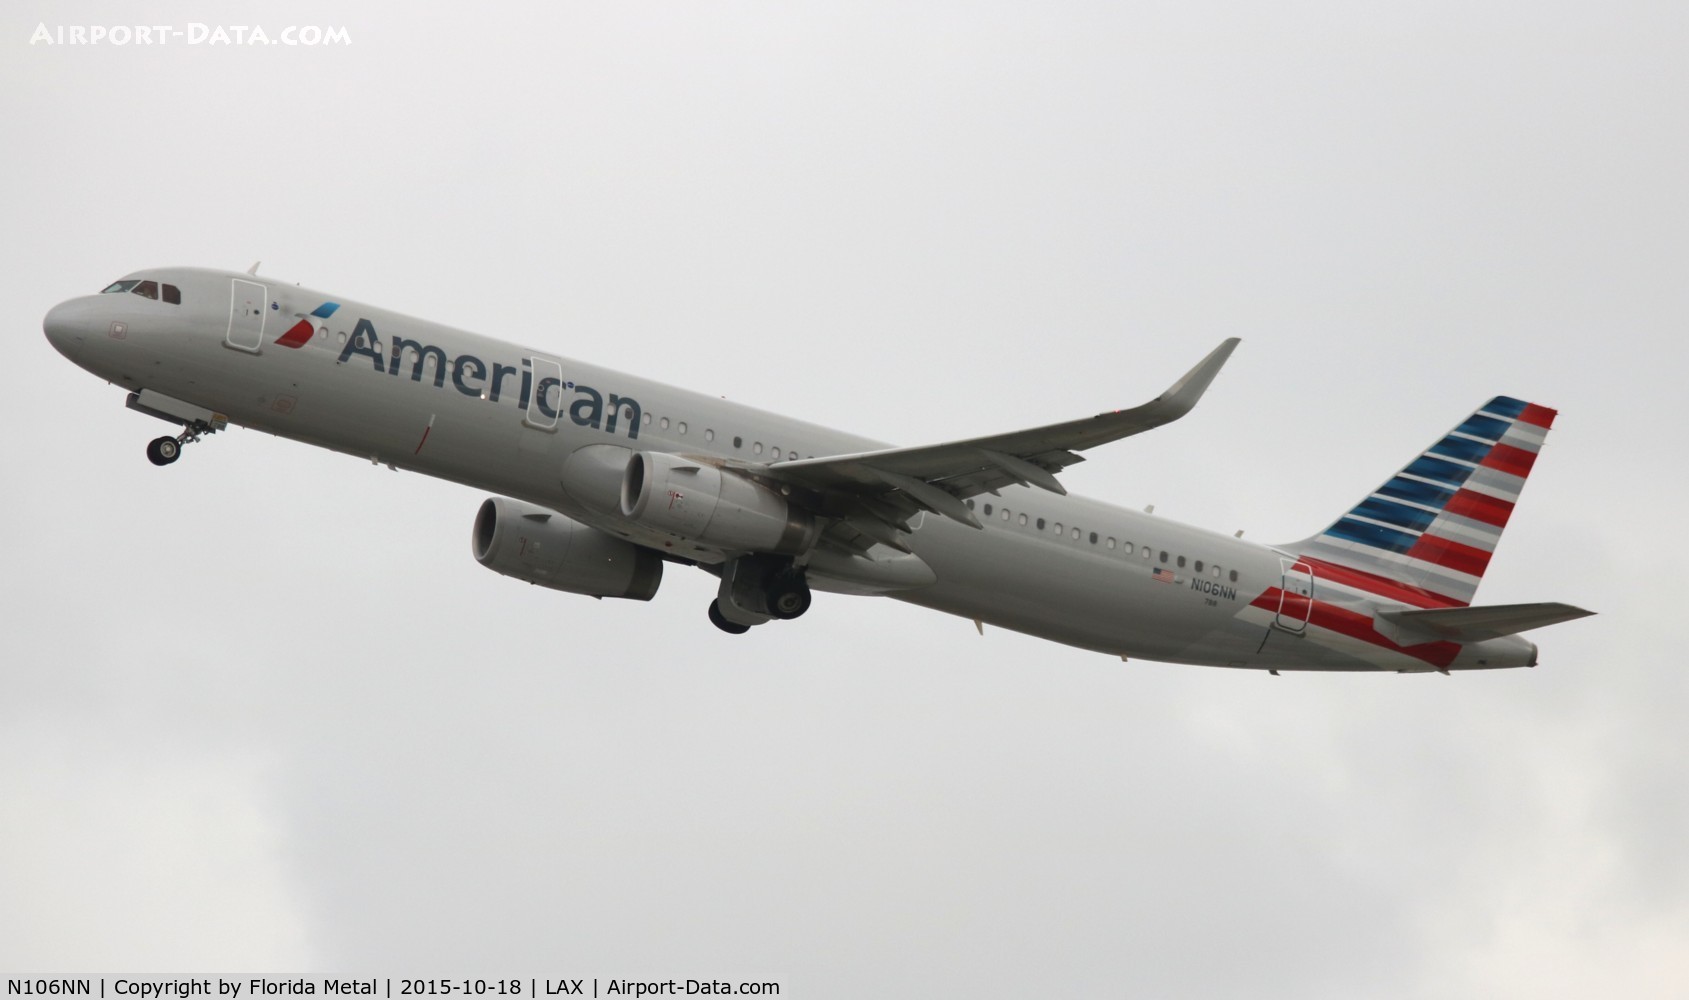 N106NN, 2013 Airbus A321-231 C/N 5932, American